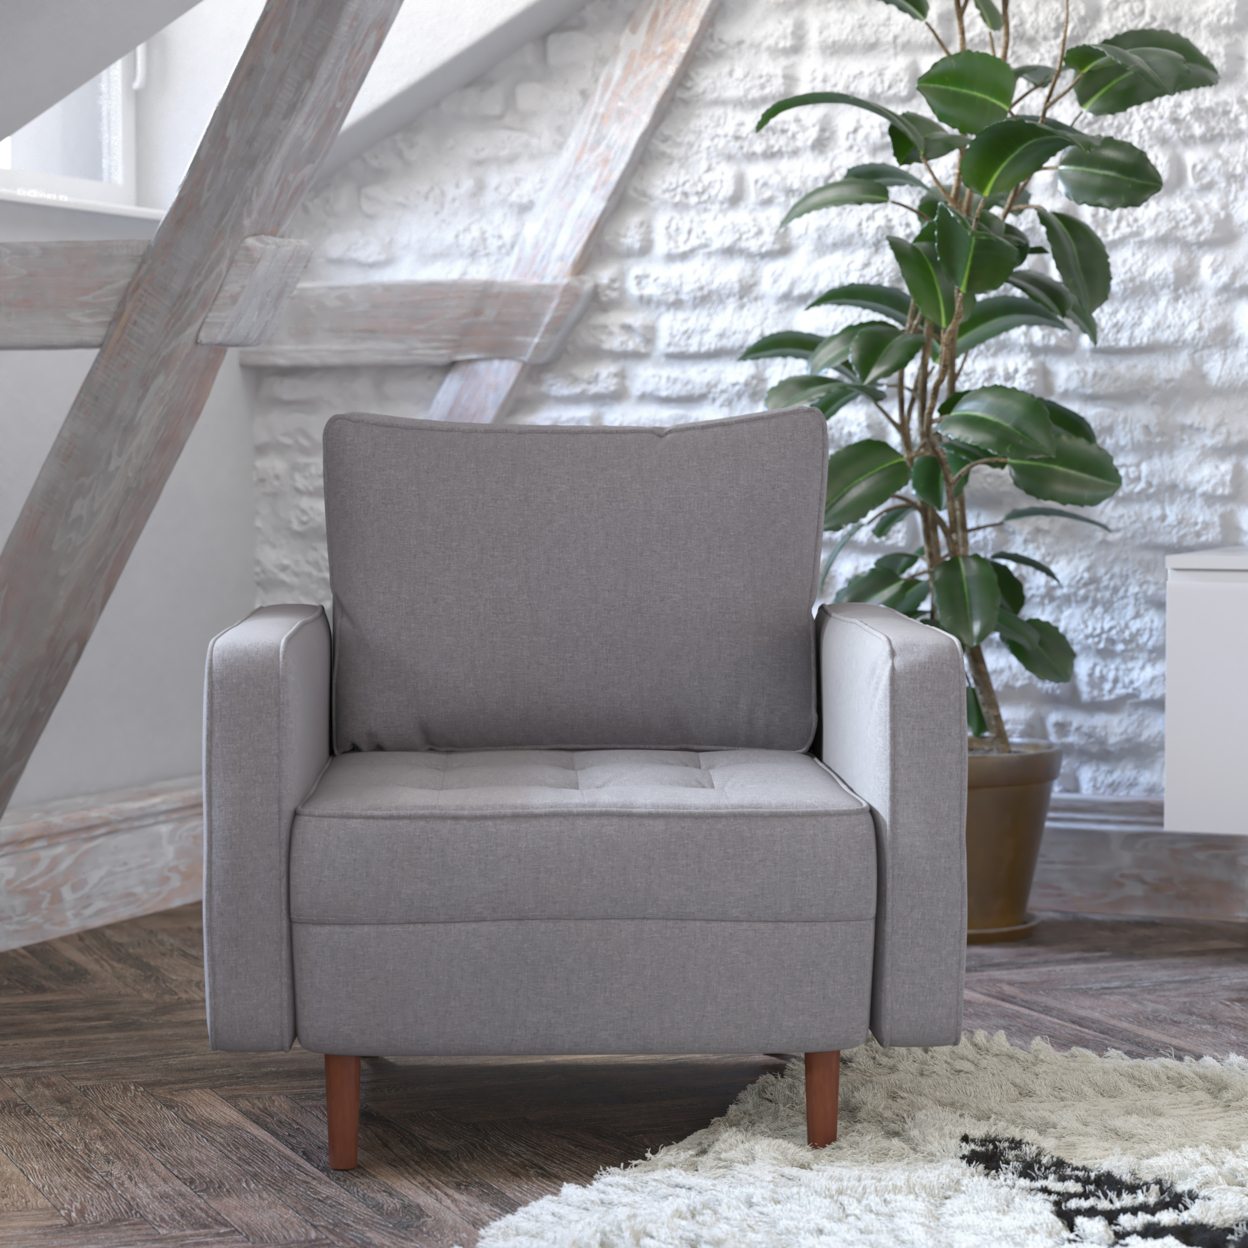 Slate Gray Upholstered Chair